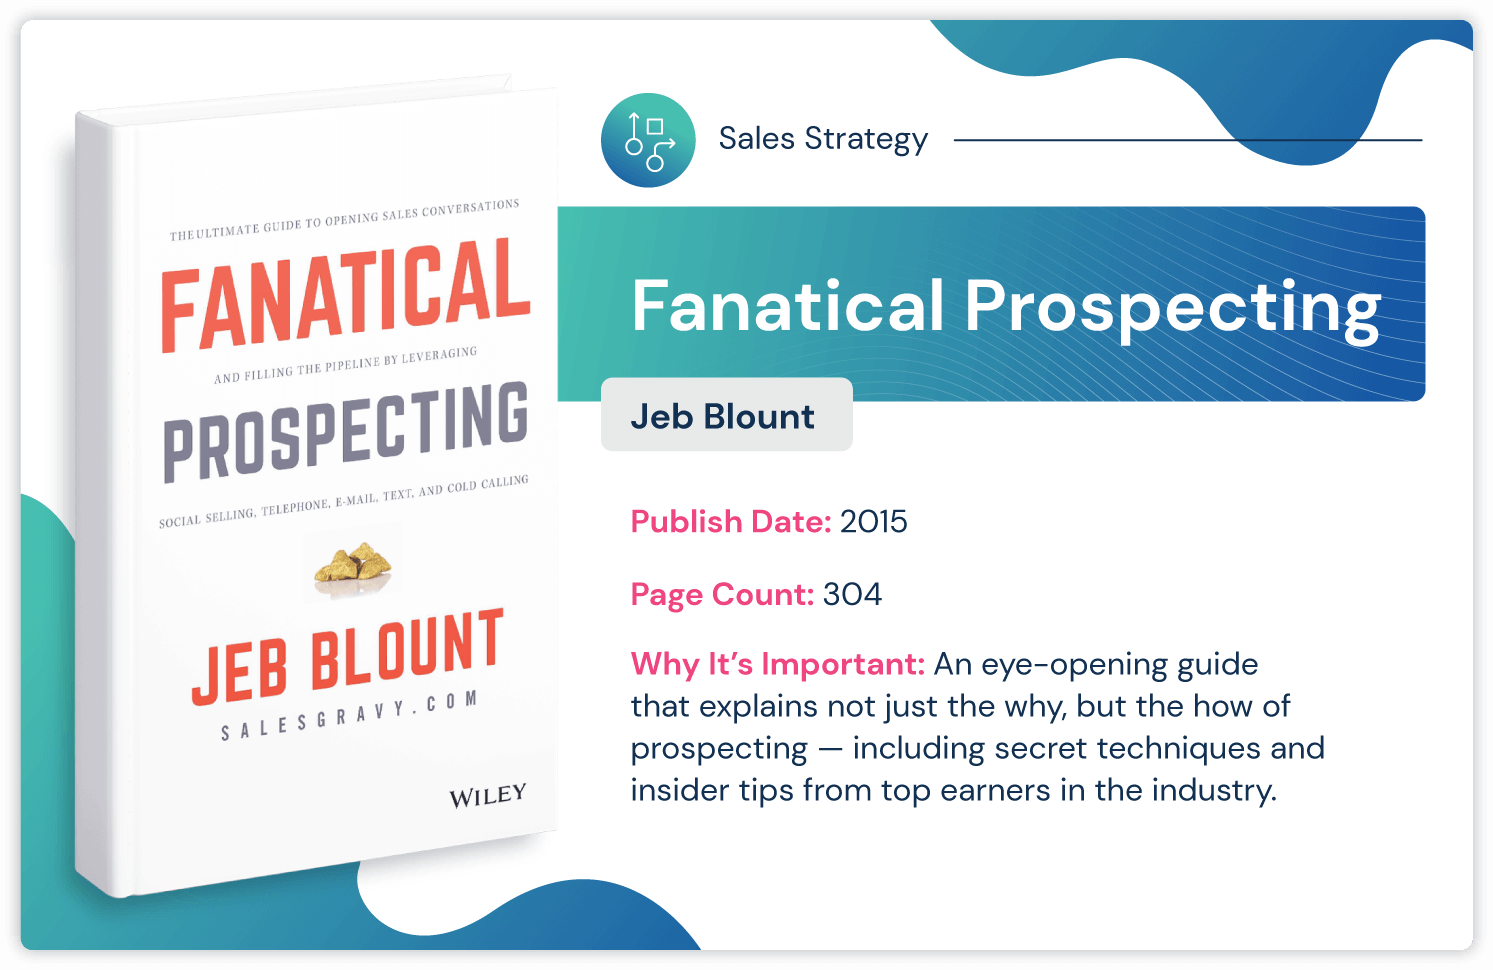 Livro de estratégia de vendas "Fanatical Prospecting" de Jeb Blount sobre dicas de insider prospecting publicado em 2015 e 304 páginas